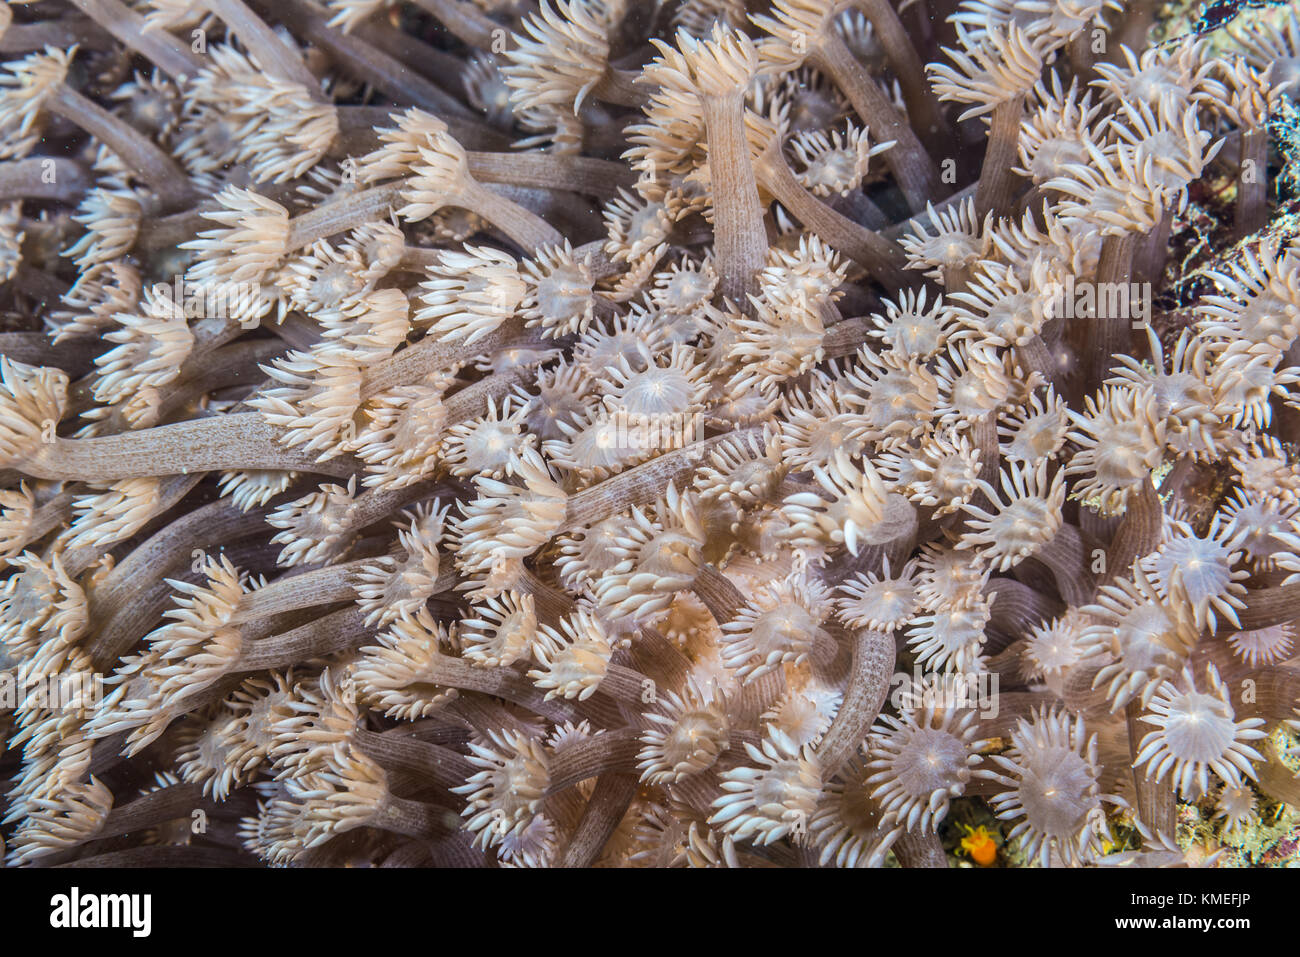 kind a stone coral (Goniopora lobata Milne Edwards, 1860) extending polyps. Owase, Mie, Japan Stock Photo